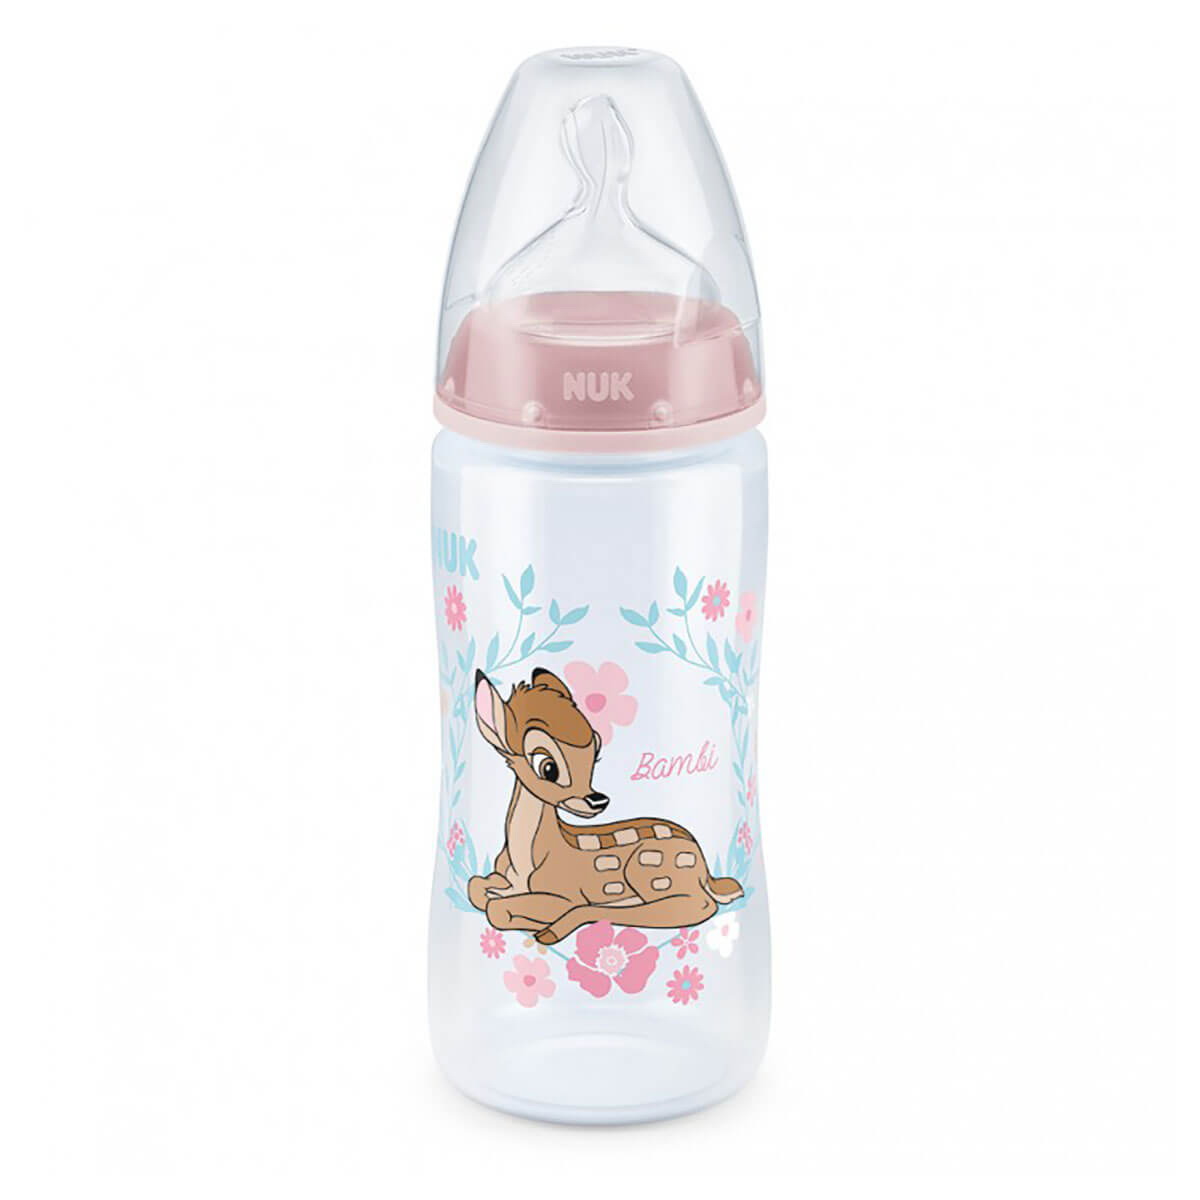 Nuk First Choice+ Disney Бэмби бутылочка с силиконовой соской р М 6-18 мес 300 мл